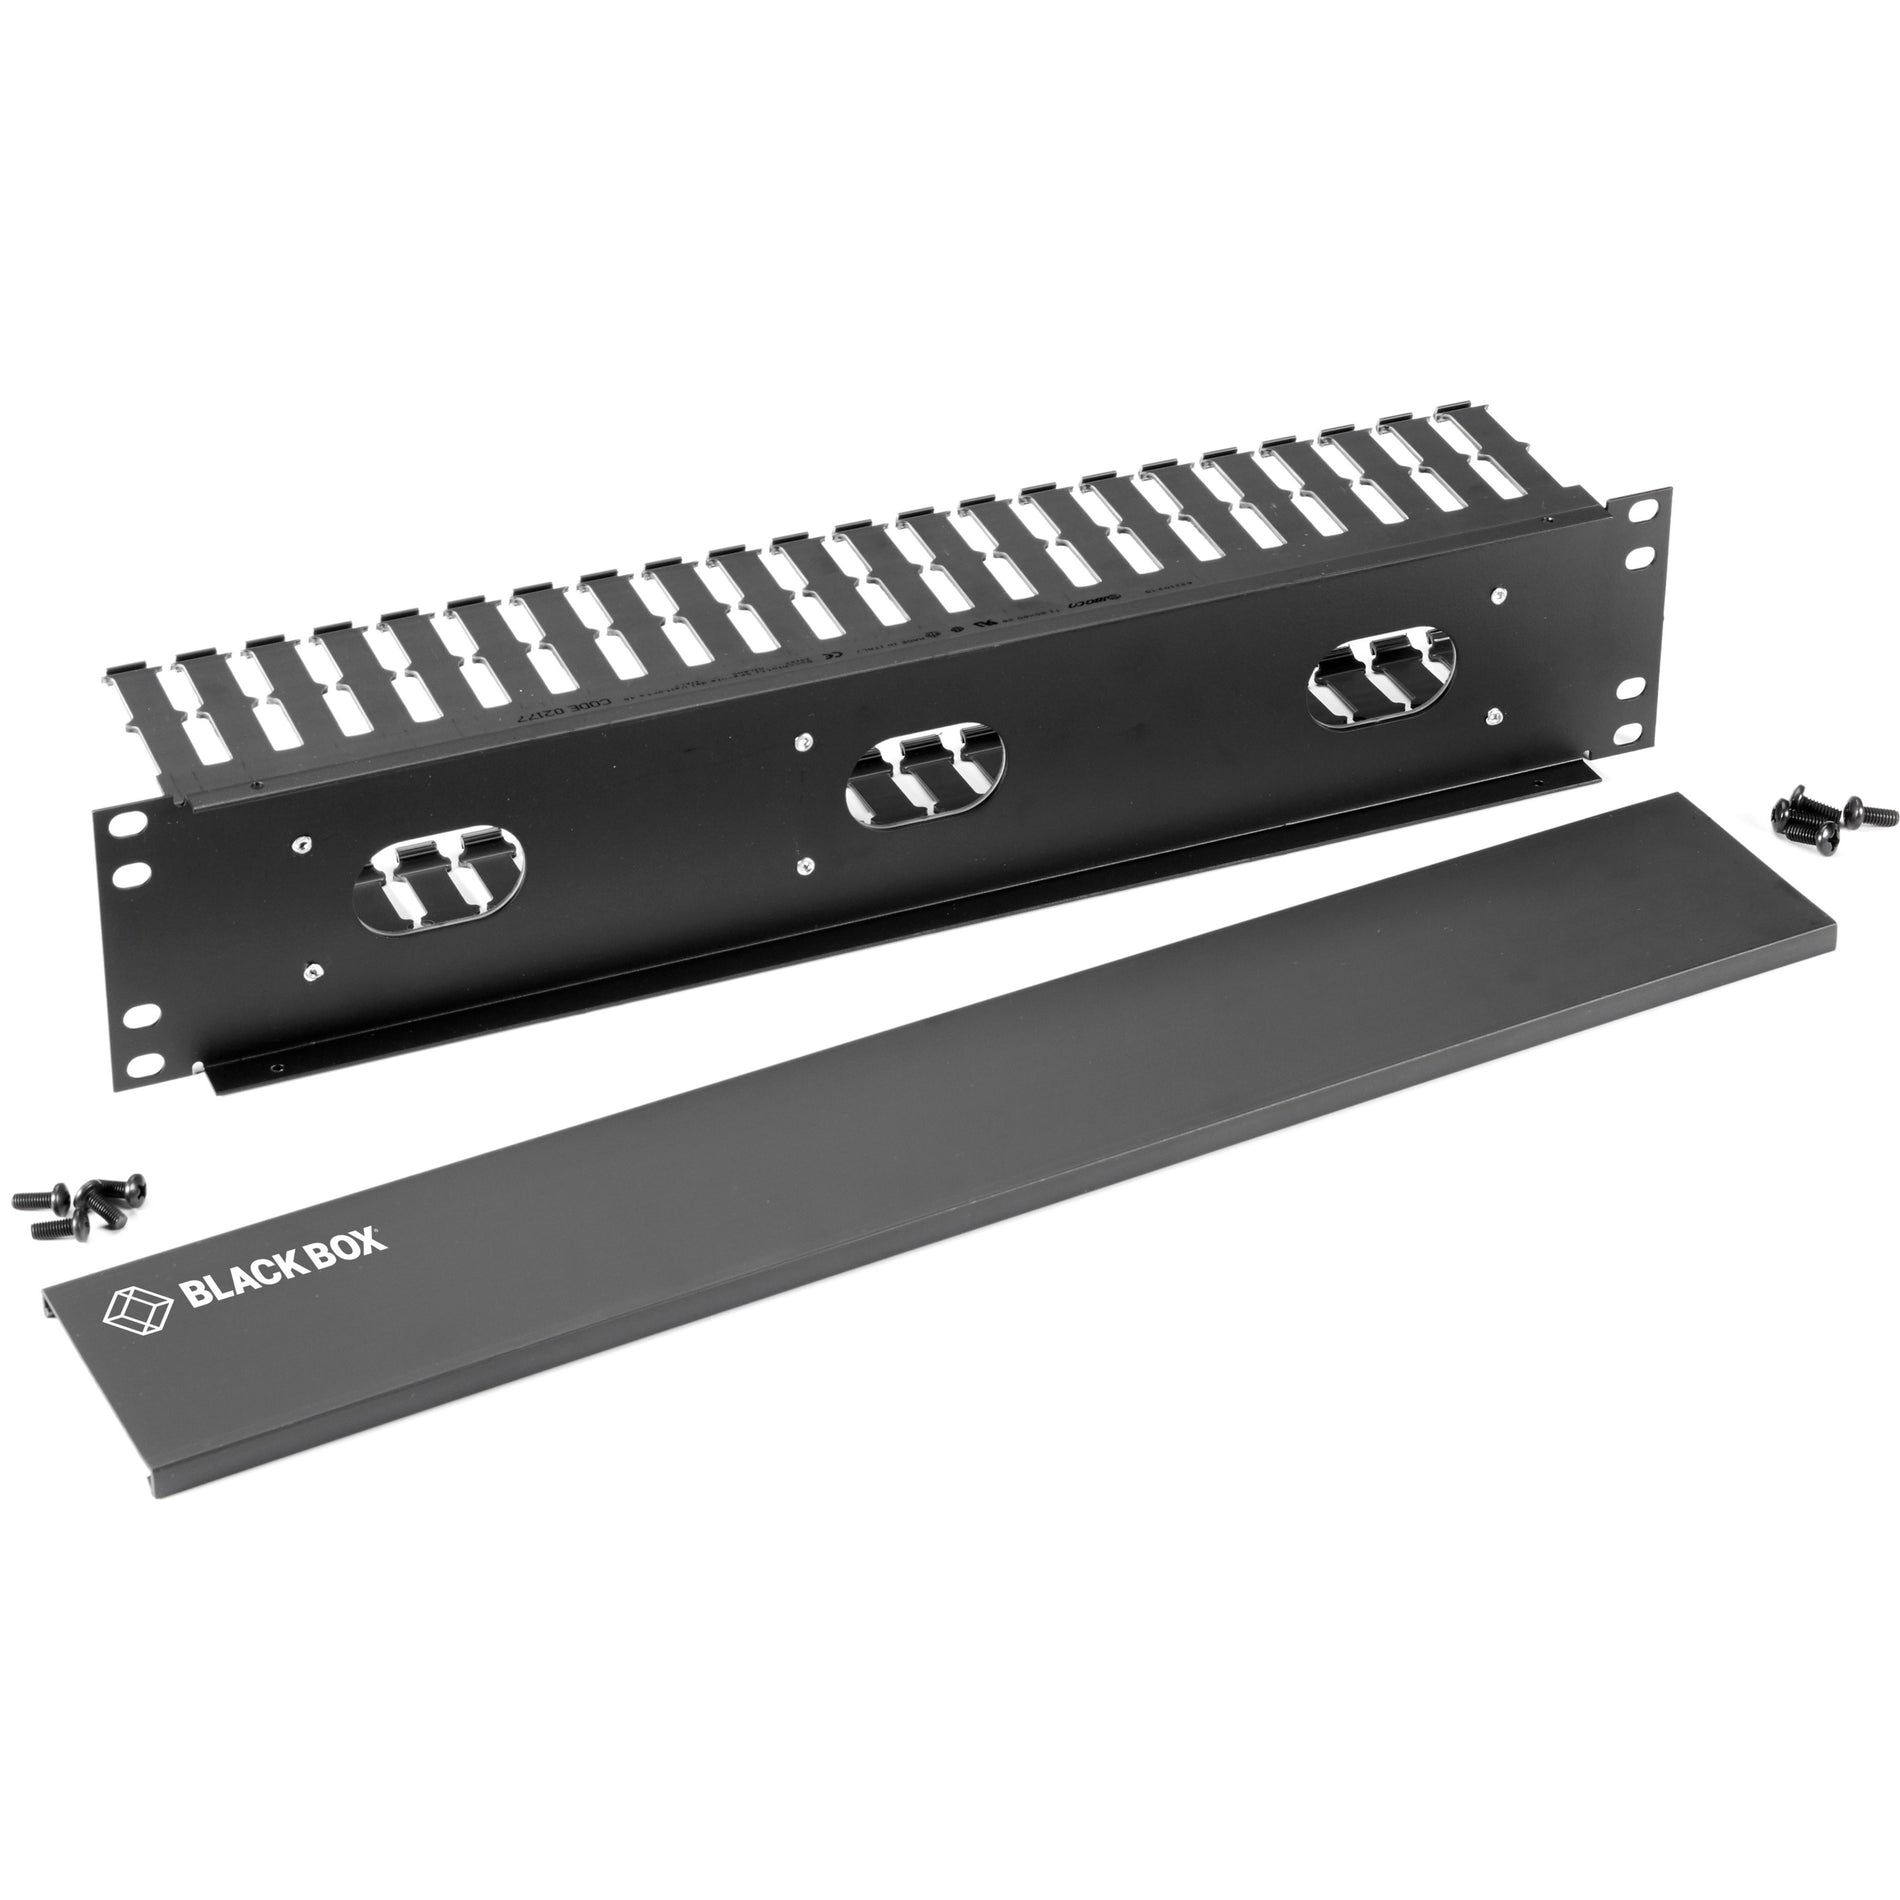 黑匣子 RMT102A-R4 横向 IT 机架安装的电缆管理器 - 2U， 19"， 单面， 黑色， 符合TAA标准 牌子名称：黑匣子